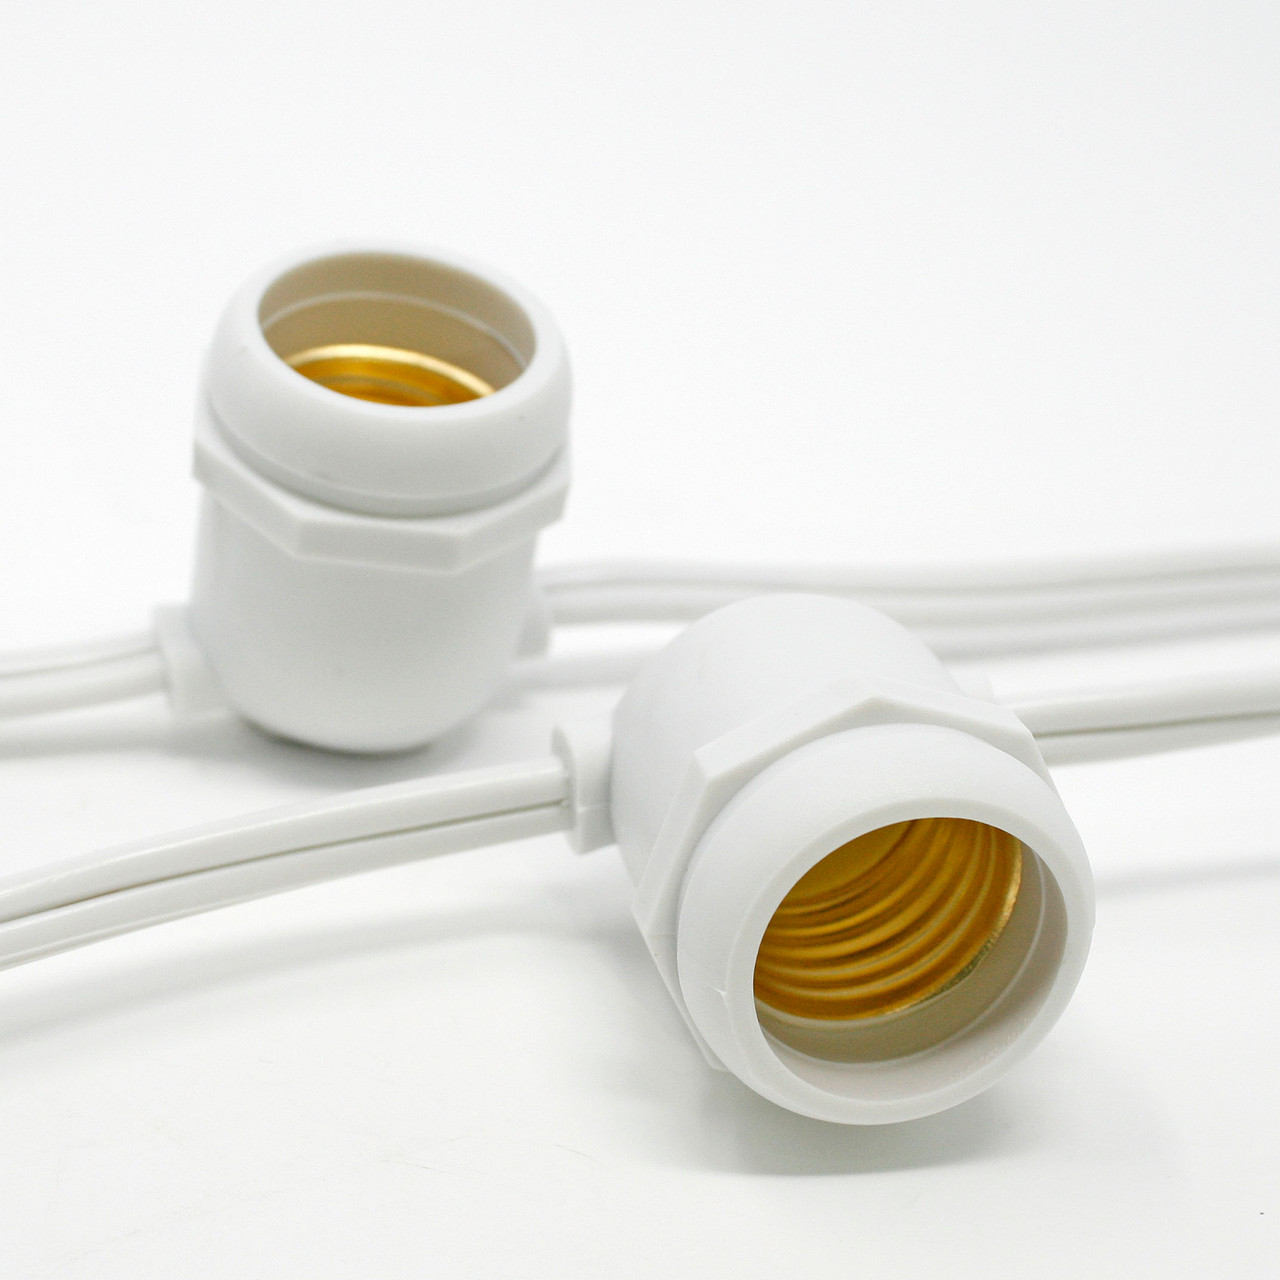 Custom Length Commercial Grade String Light Cord, No Plug (medium/E26 base)